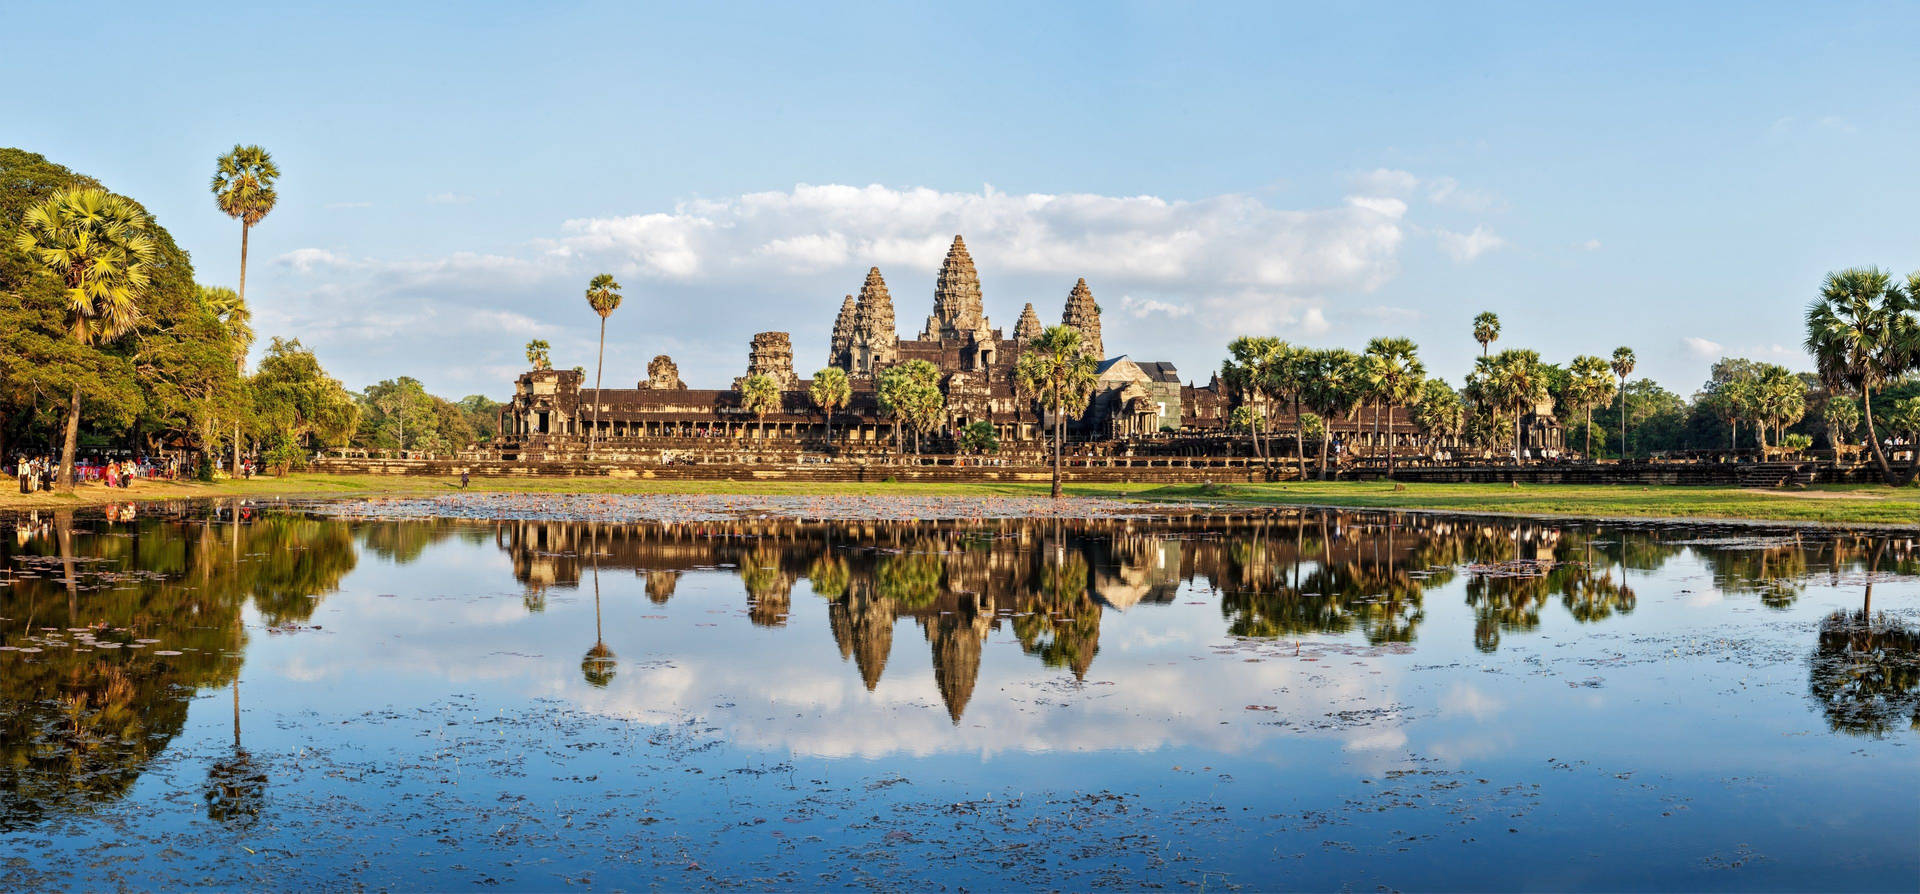 Angkorwat Bajo Un Cielo Azul Reflejado En El Agua Fondo de pantalla